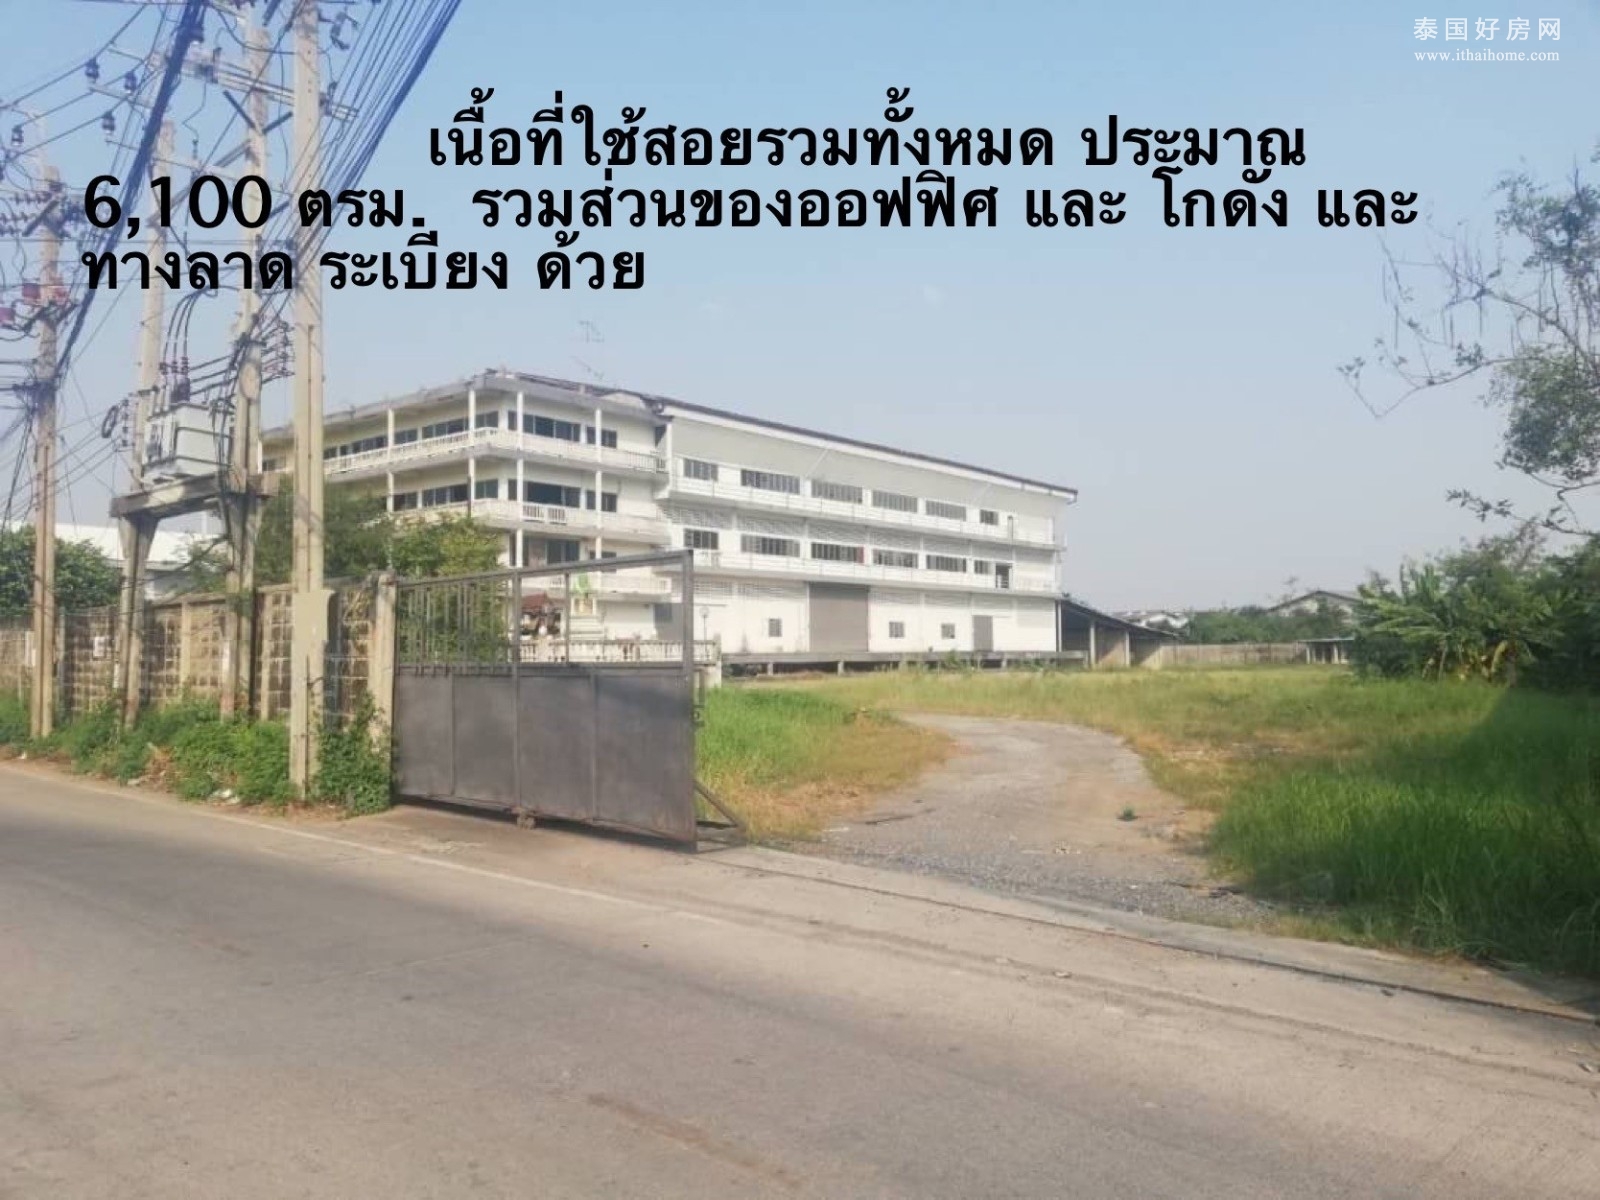 Nikhom Bangpu Samutprakan 土地出售 19272平米 16800万泰铢